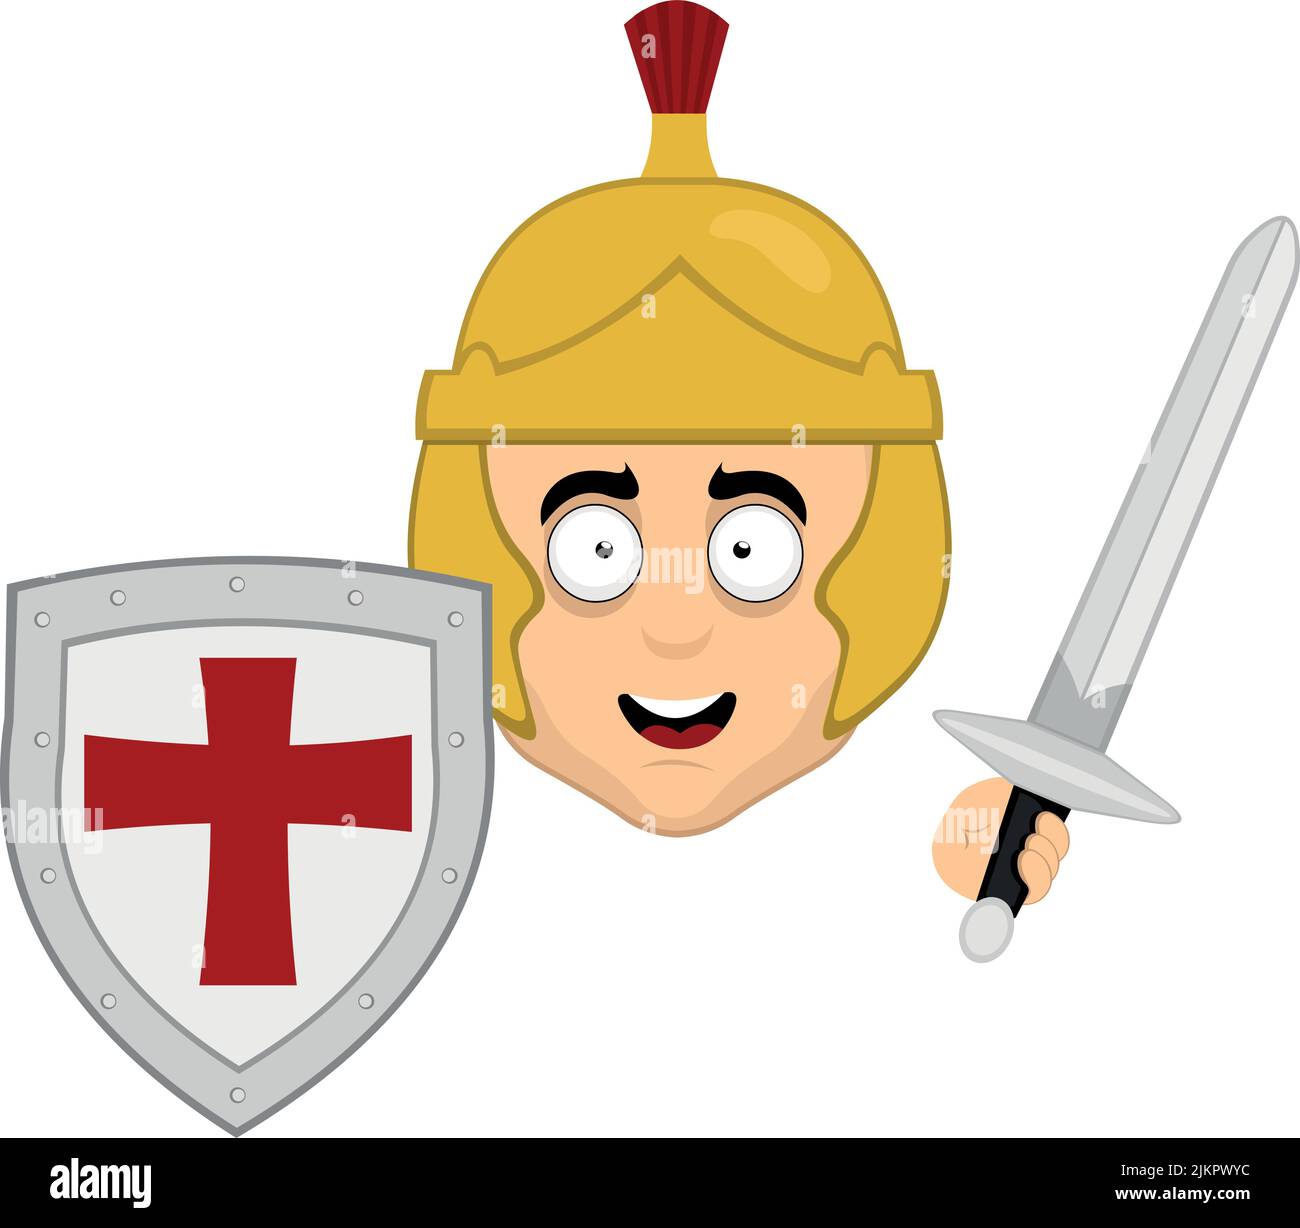 Illustration vectorielle du visage d'un soldat romain avec casque, bouclier et épée à la main Illustration de Vecteur